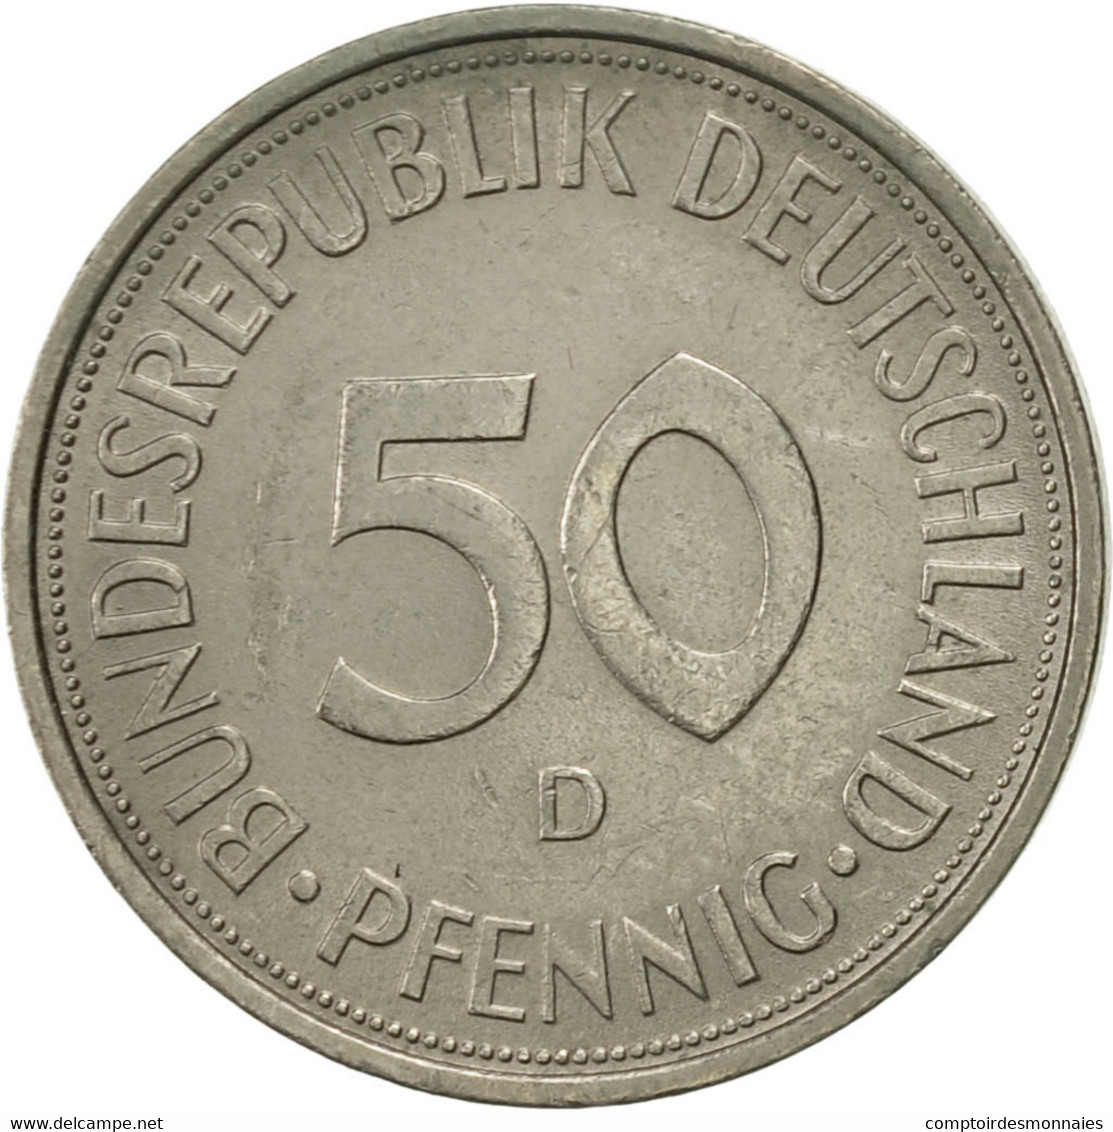 Monnaie, République Fédérale Allemande, 50 Pfennig, 1972, Munich, TTB - 50 Pfennig